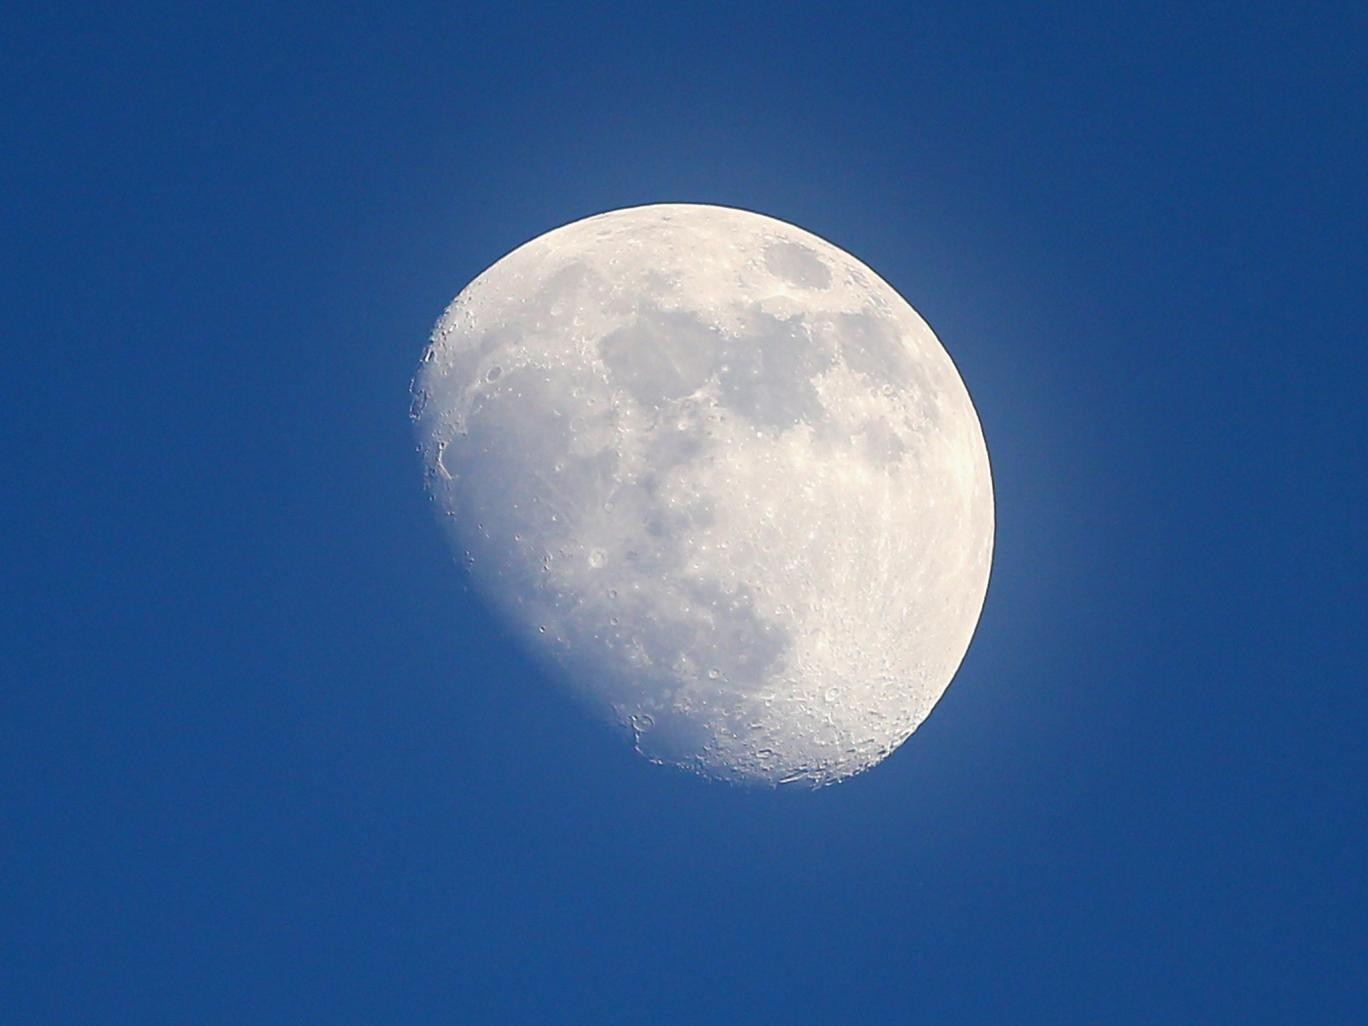 A Lua faz com que a atmosfera da Terra "inche" em sua direção quando se encontra superaquecida. Foto: Getty Images